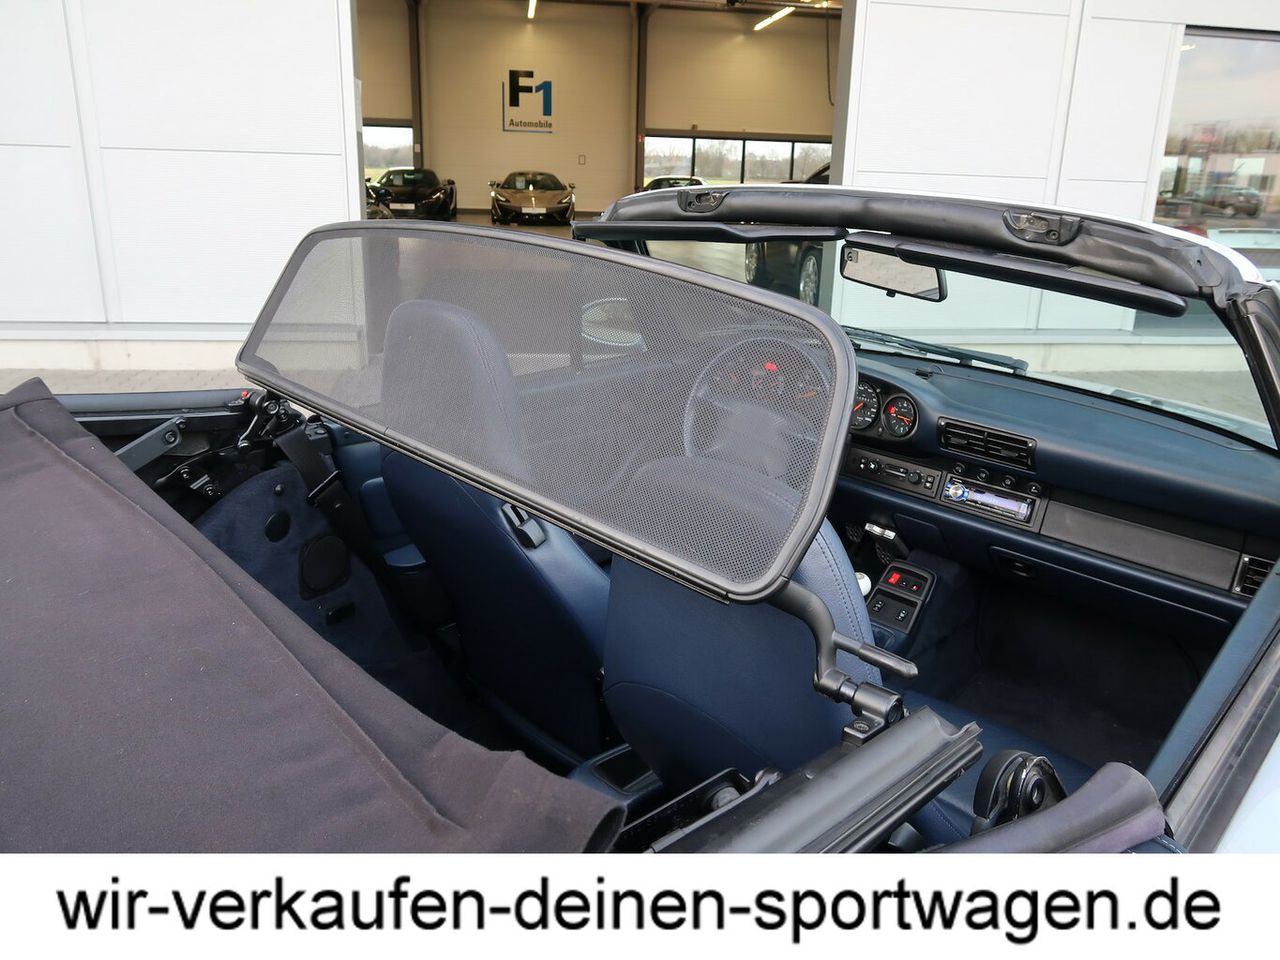 PORSCHE 911 993 Carrera Cabriolet LM 18' GW-Fahrwerk top Zust.